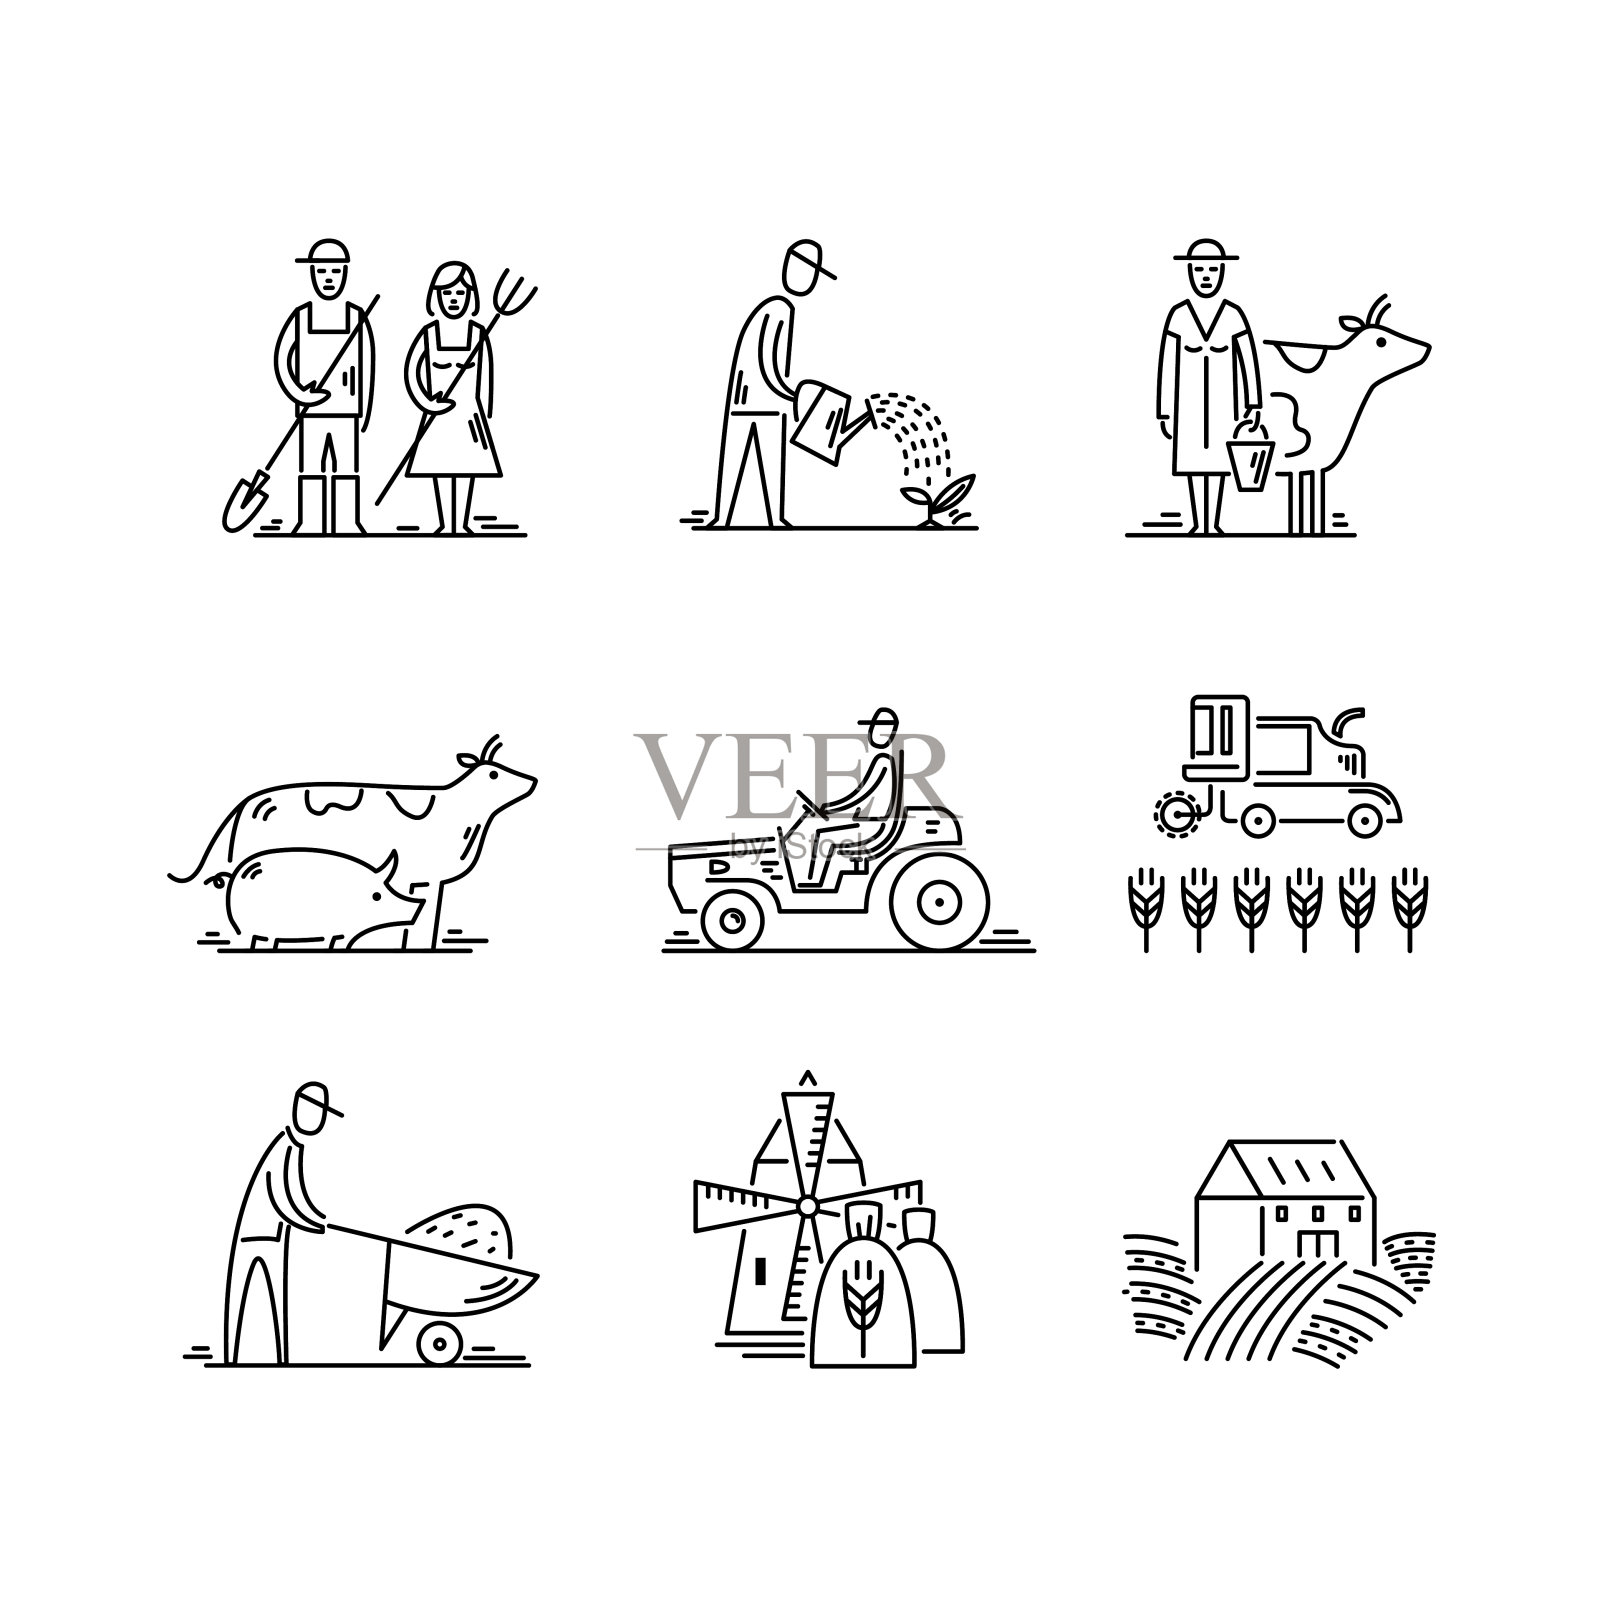 农学符号、人、动物、农田、农具、拖拉机运输插画图片素材